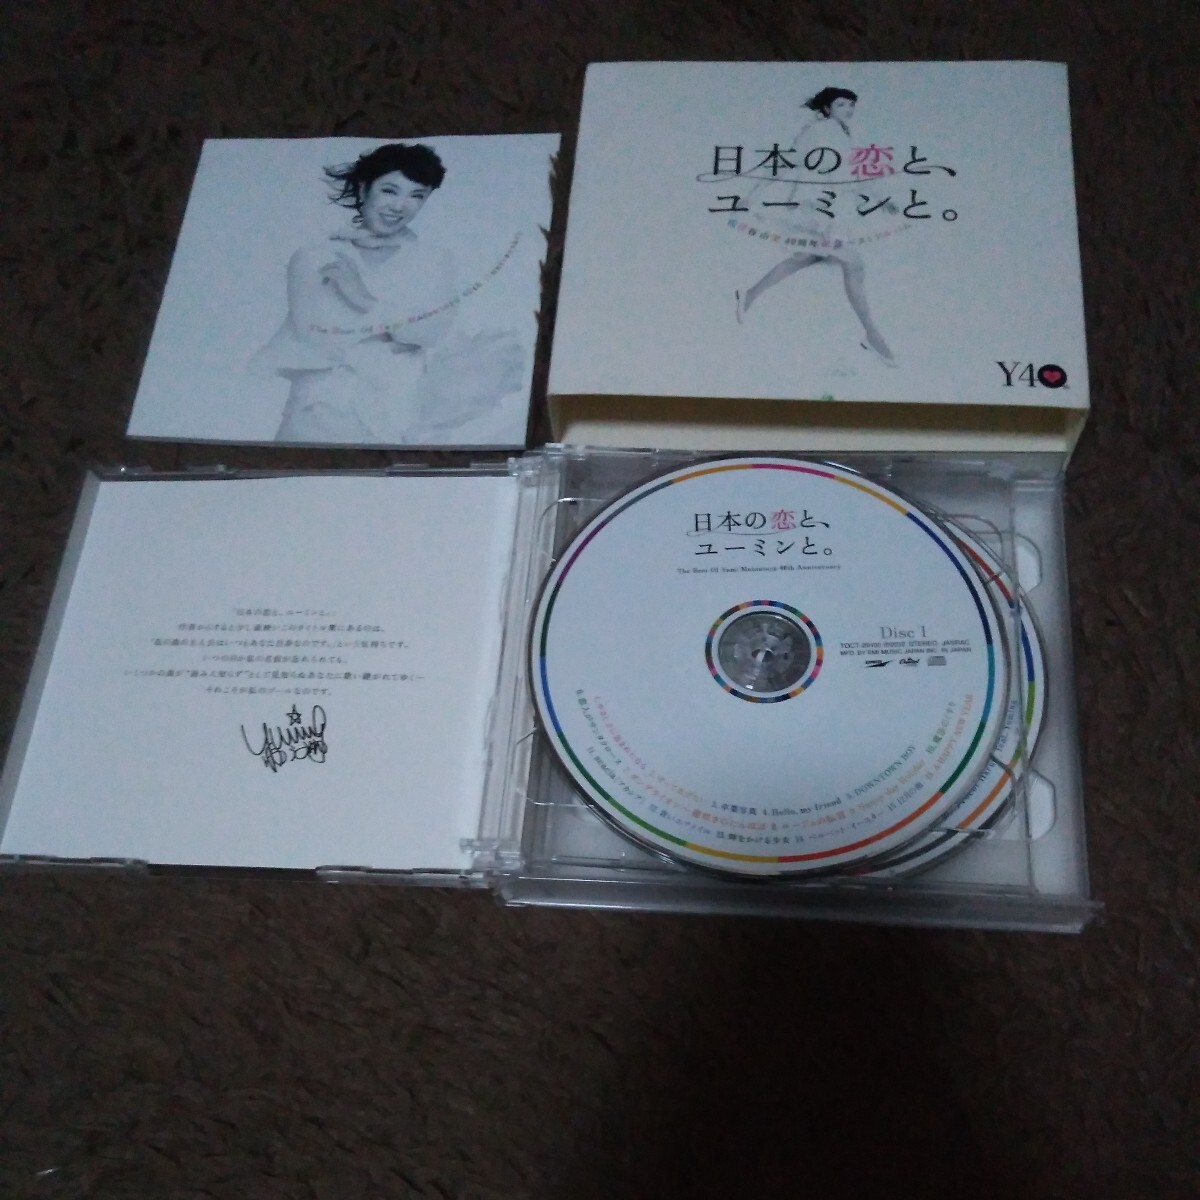 松任谷由実 日本の恋と、ユーミンと。初回限定盤 3CD+DVD (ベスト アルバム) レア 貴重 名盤 BEST_画像3